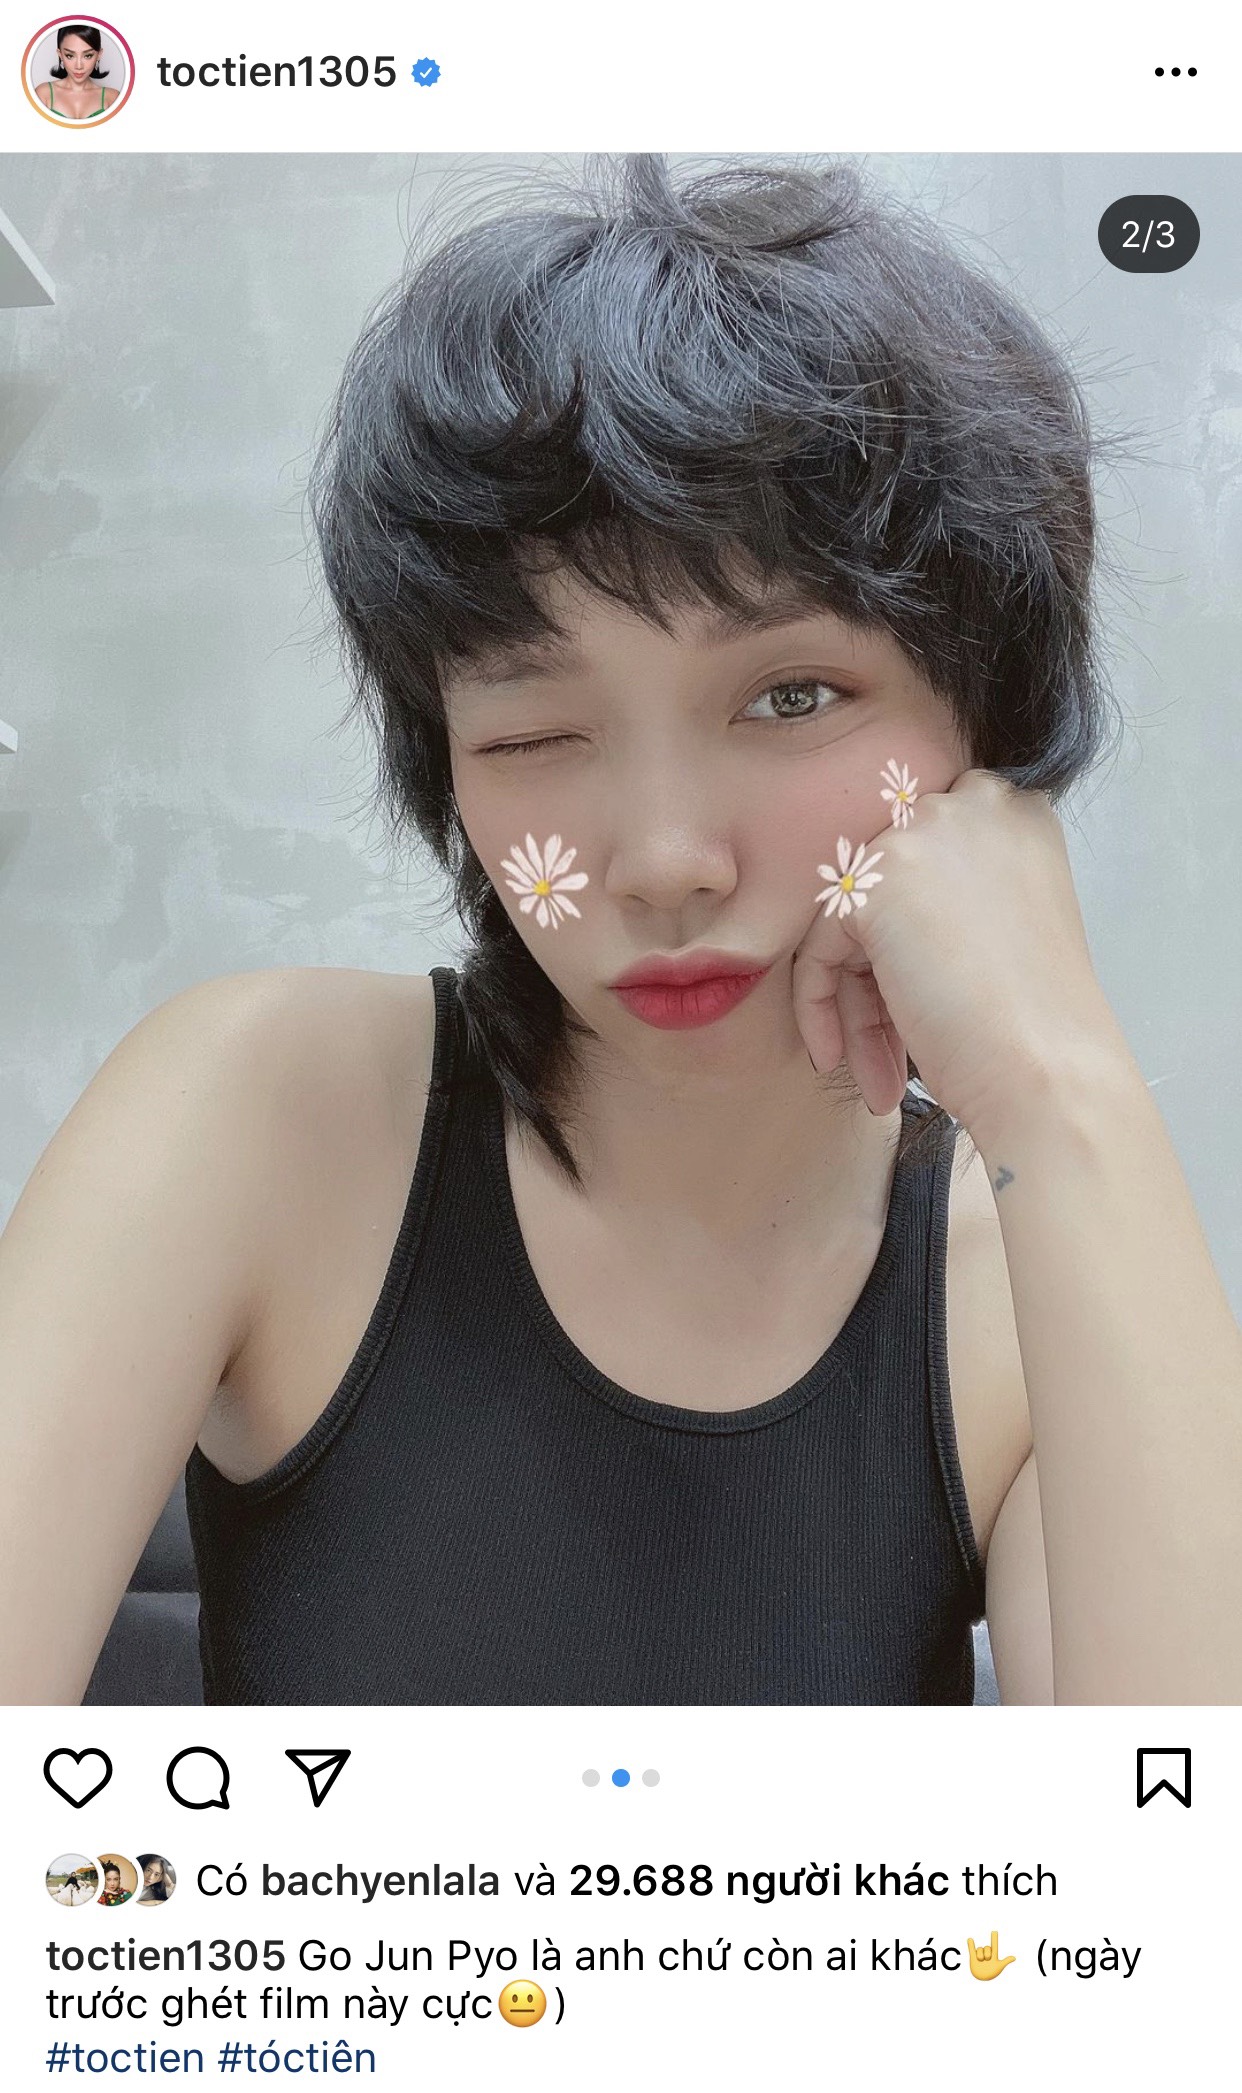 Nữ ca sĩ Tóc Tiên khoe vẻ mới mẻ với kiểu tóc pixie tạo kiểu xù trông khá lạ